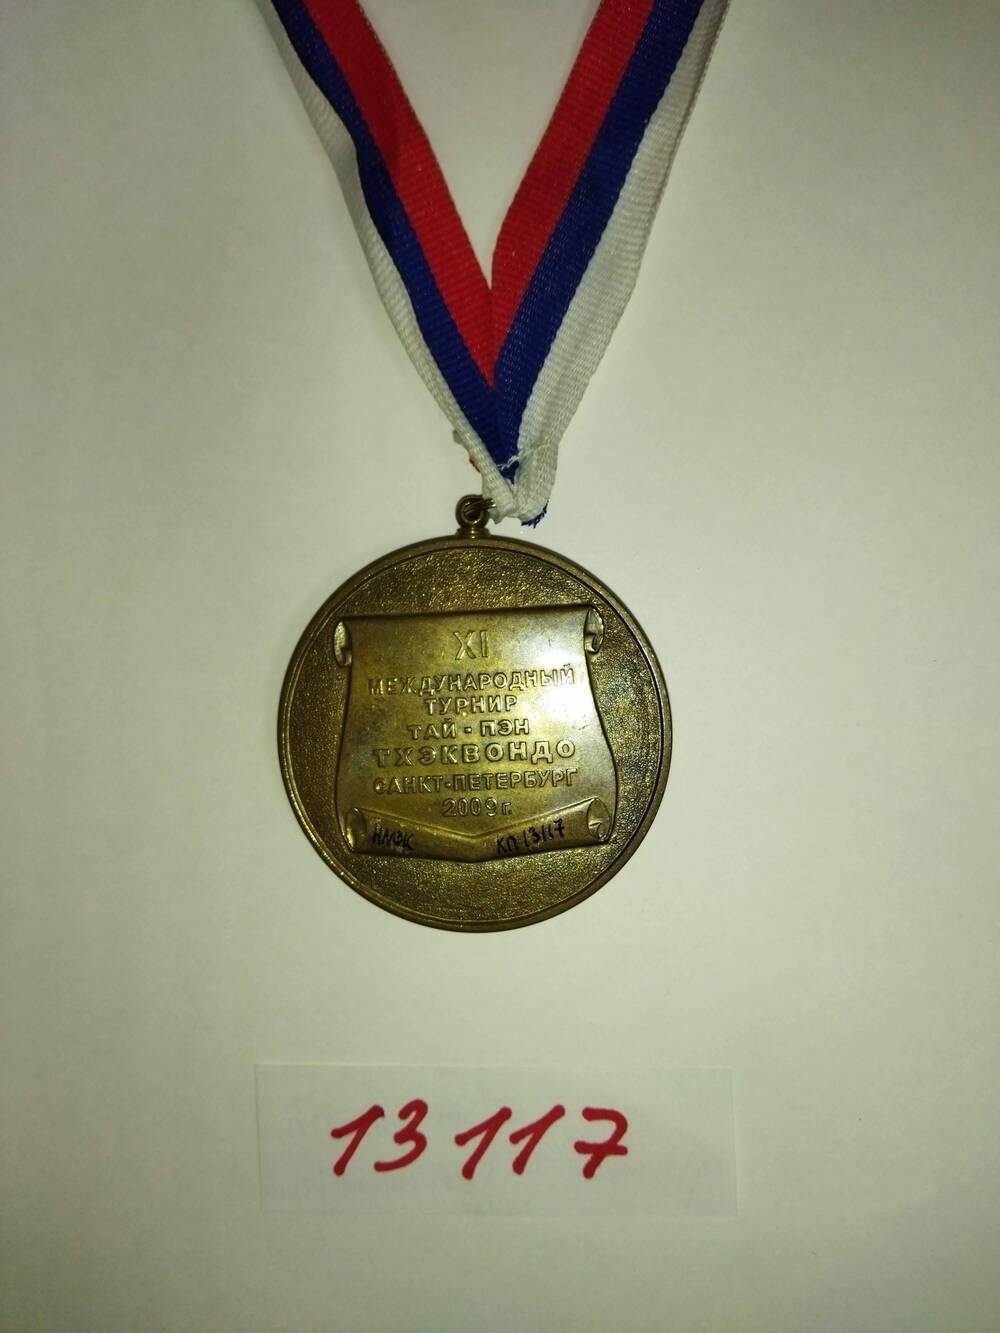 Медаль спортивная «XI Международный турнир тай-пэн тхэквондо. Санкт-Петербург 2009 г». Семпишевой Байрты.